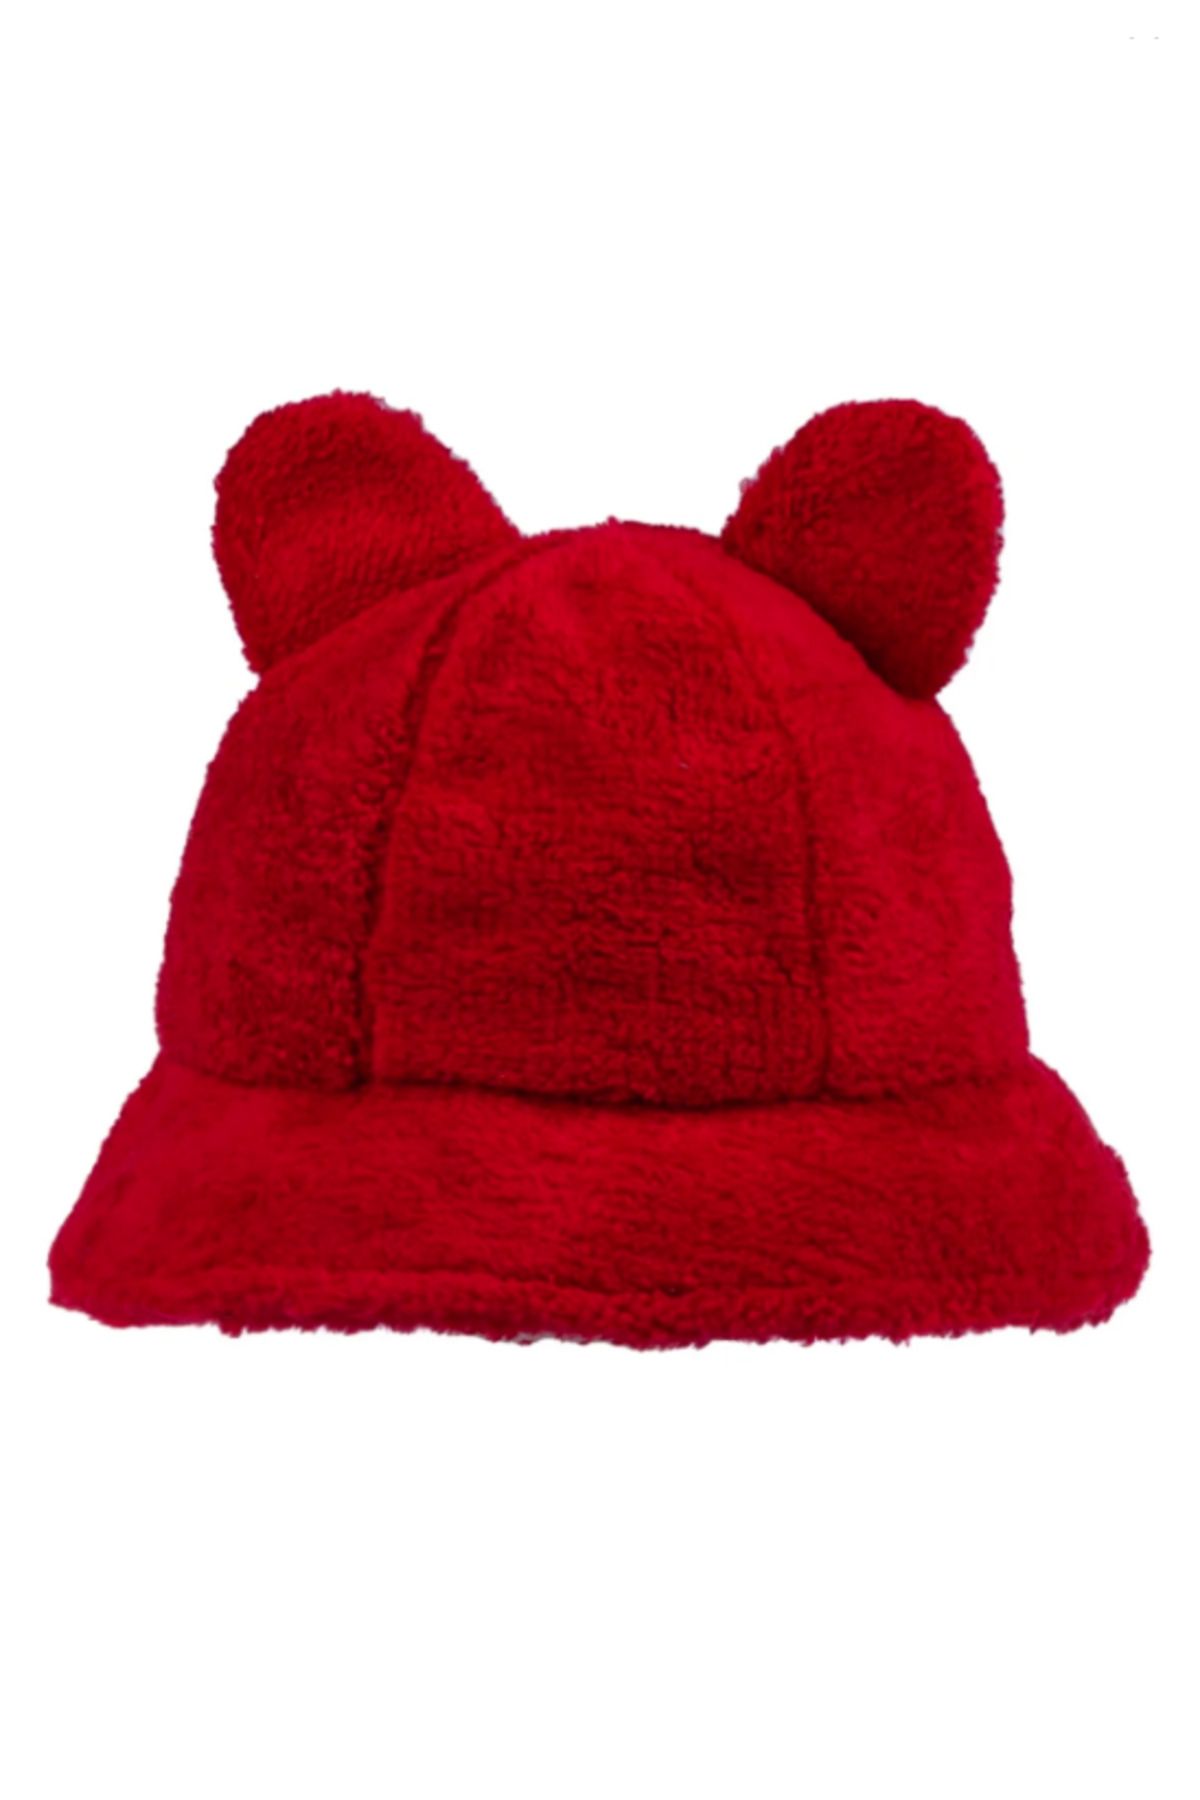 Kitti Şapka Fötr Peluş Kırmızı